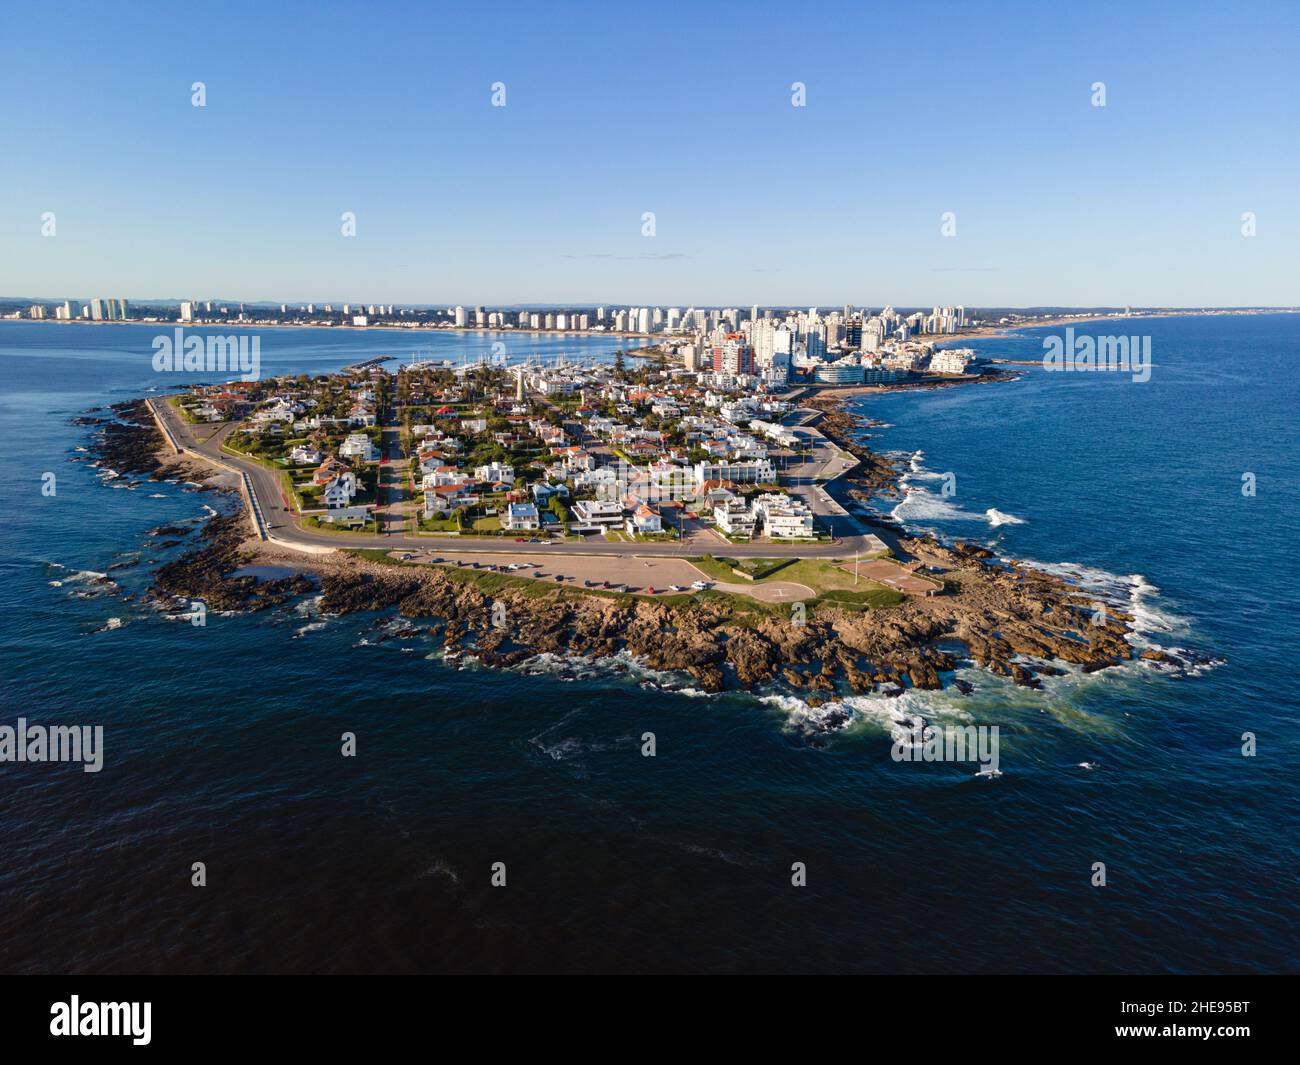 Aerial view of Punta del Este in Maldonado Uruguay Stock Photo